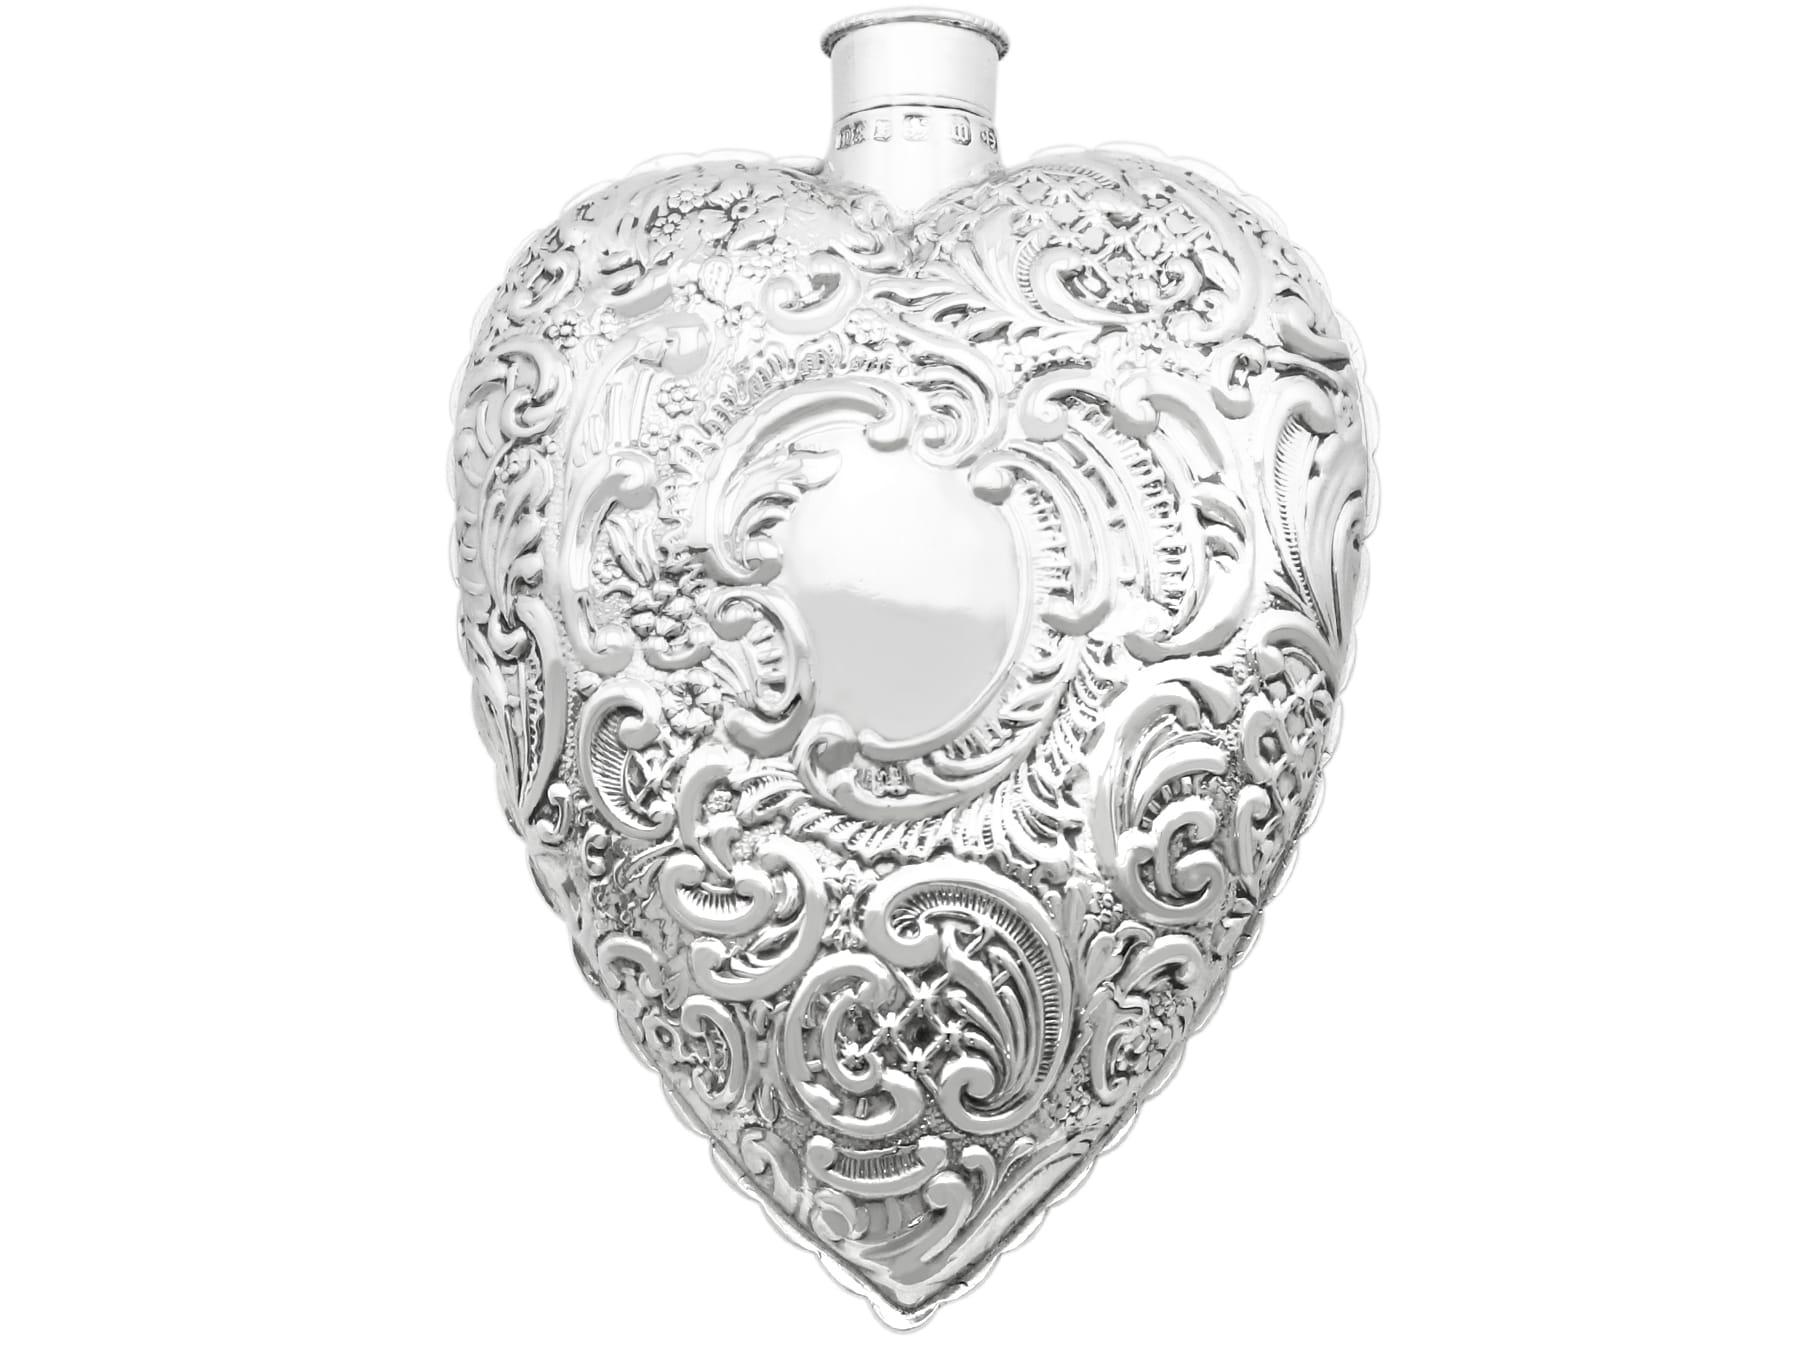 Une exceptionnelle, fine et impressionnante flasque parfumée en forme de cœur en argent sterling anglais de l'époque victorienne ; un ajout à notre collection diversifiée d'argenterie.

Cette flasque parfumée en argent sterling de l'époque